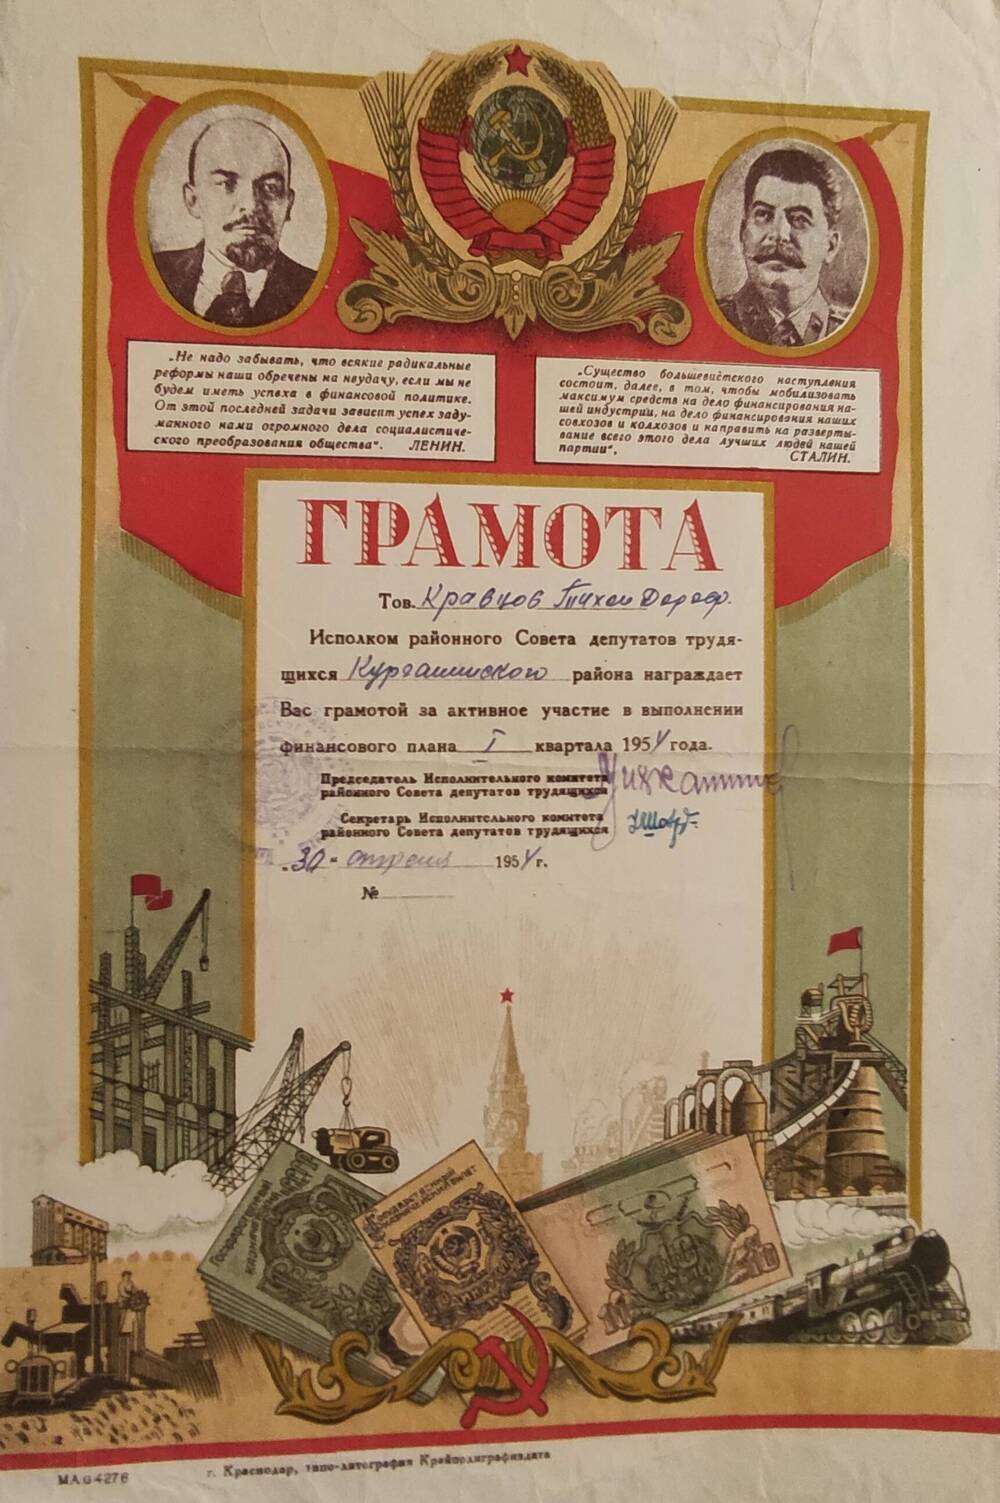 Грамота Кравцову Тихону Дорофеевичу  за участие в выполнении финансового плана 1 квартала 1954 г.